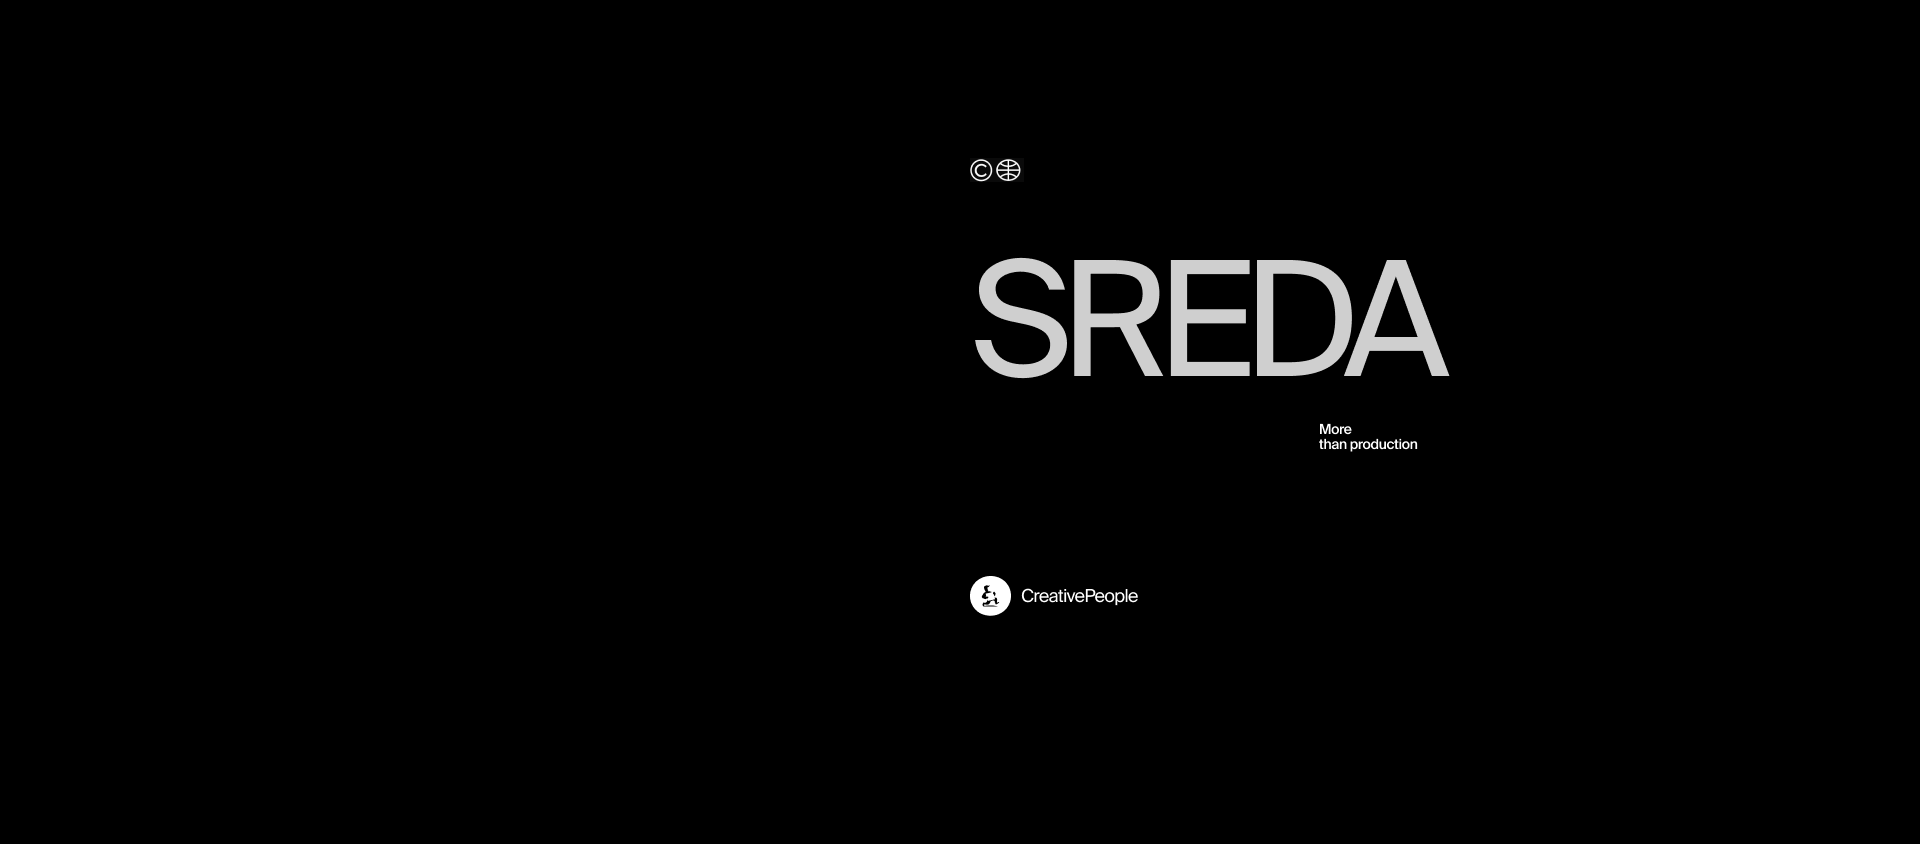 Sreda → сериалы для Netflix — Изображение №11 — Интерфейсы, Брендинг на Dprofile